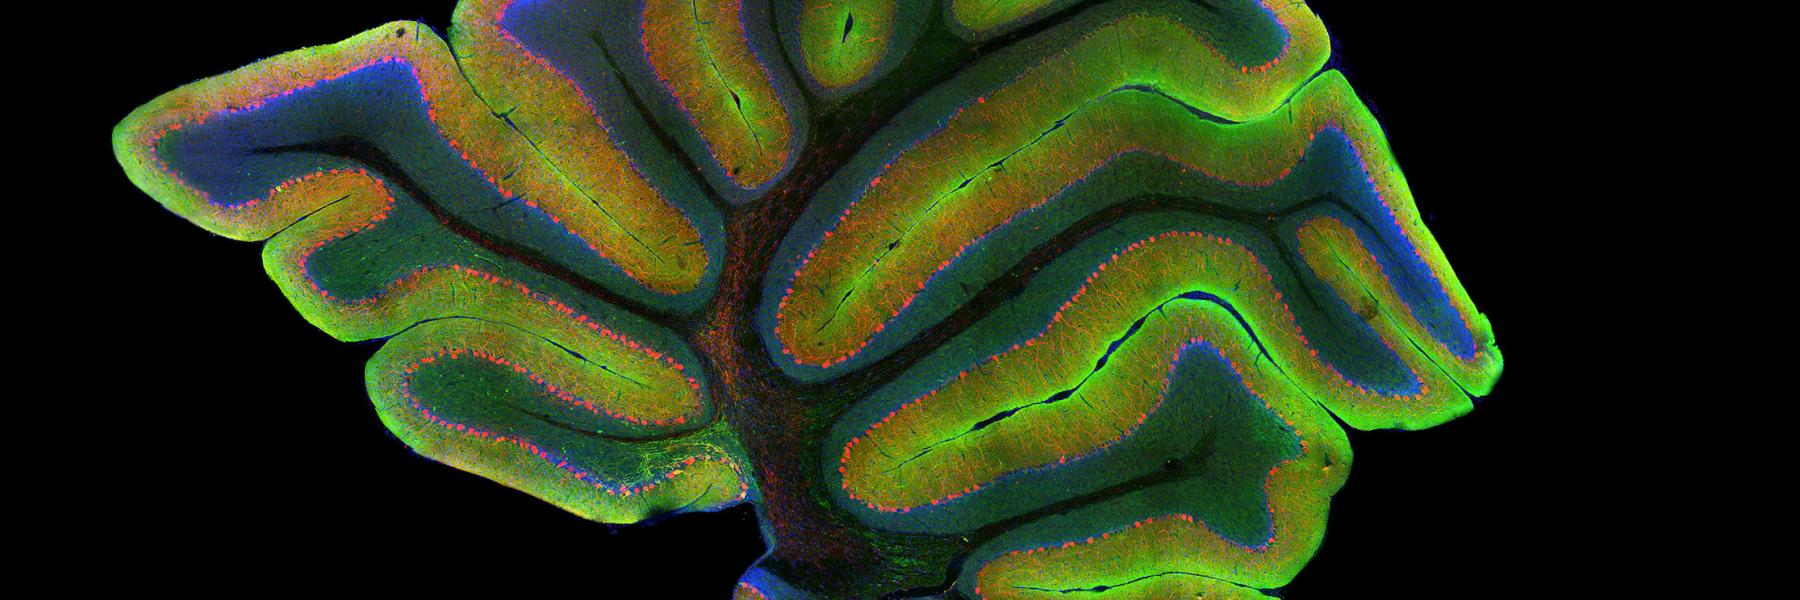 Laser scanning confocal image of a mouse cerebellum. Credit: Gabriel Luna